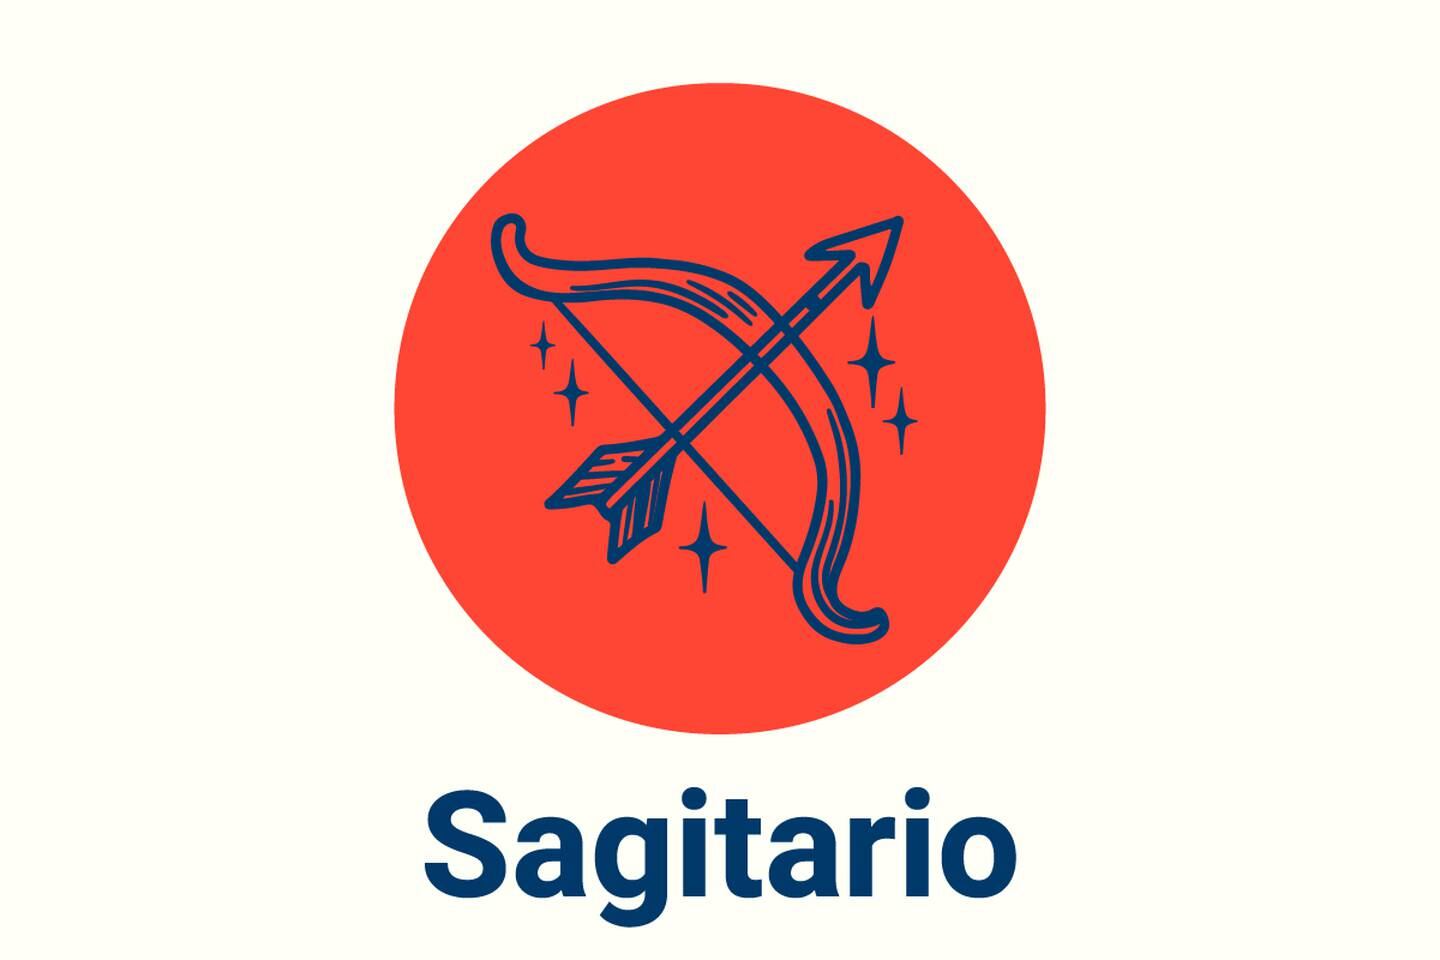 Imagen con el símbolo del signo zodiacal Sagitario.